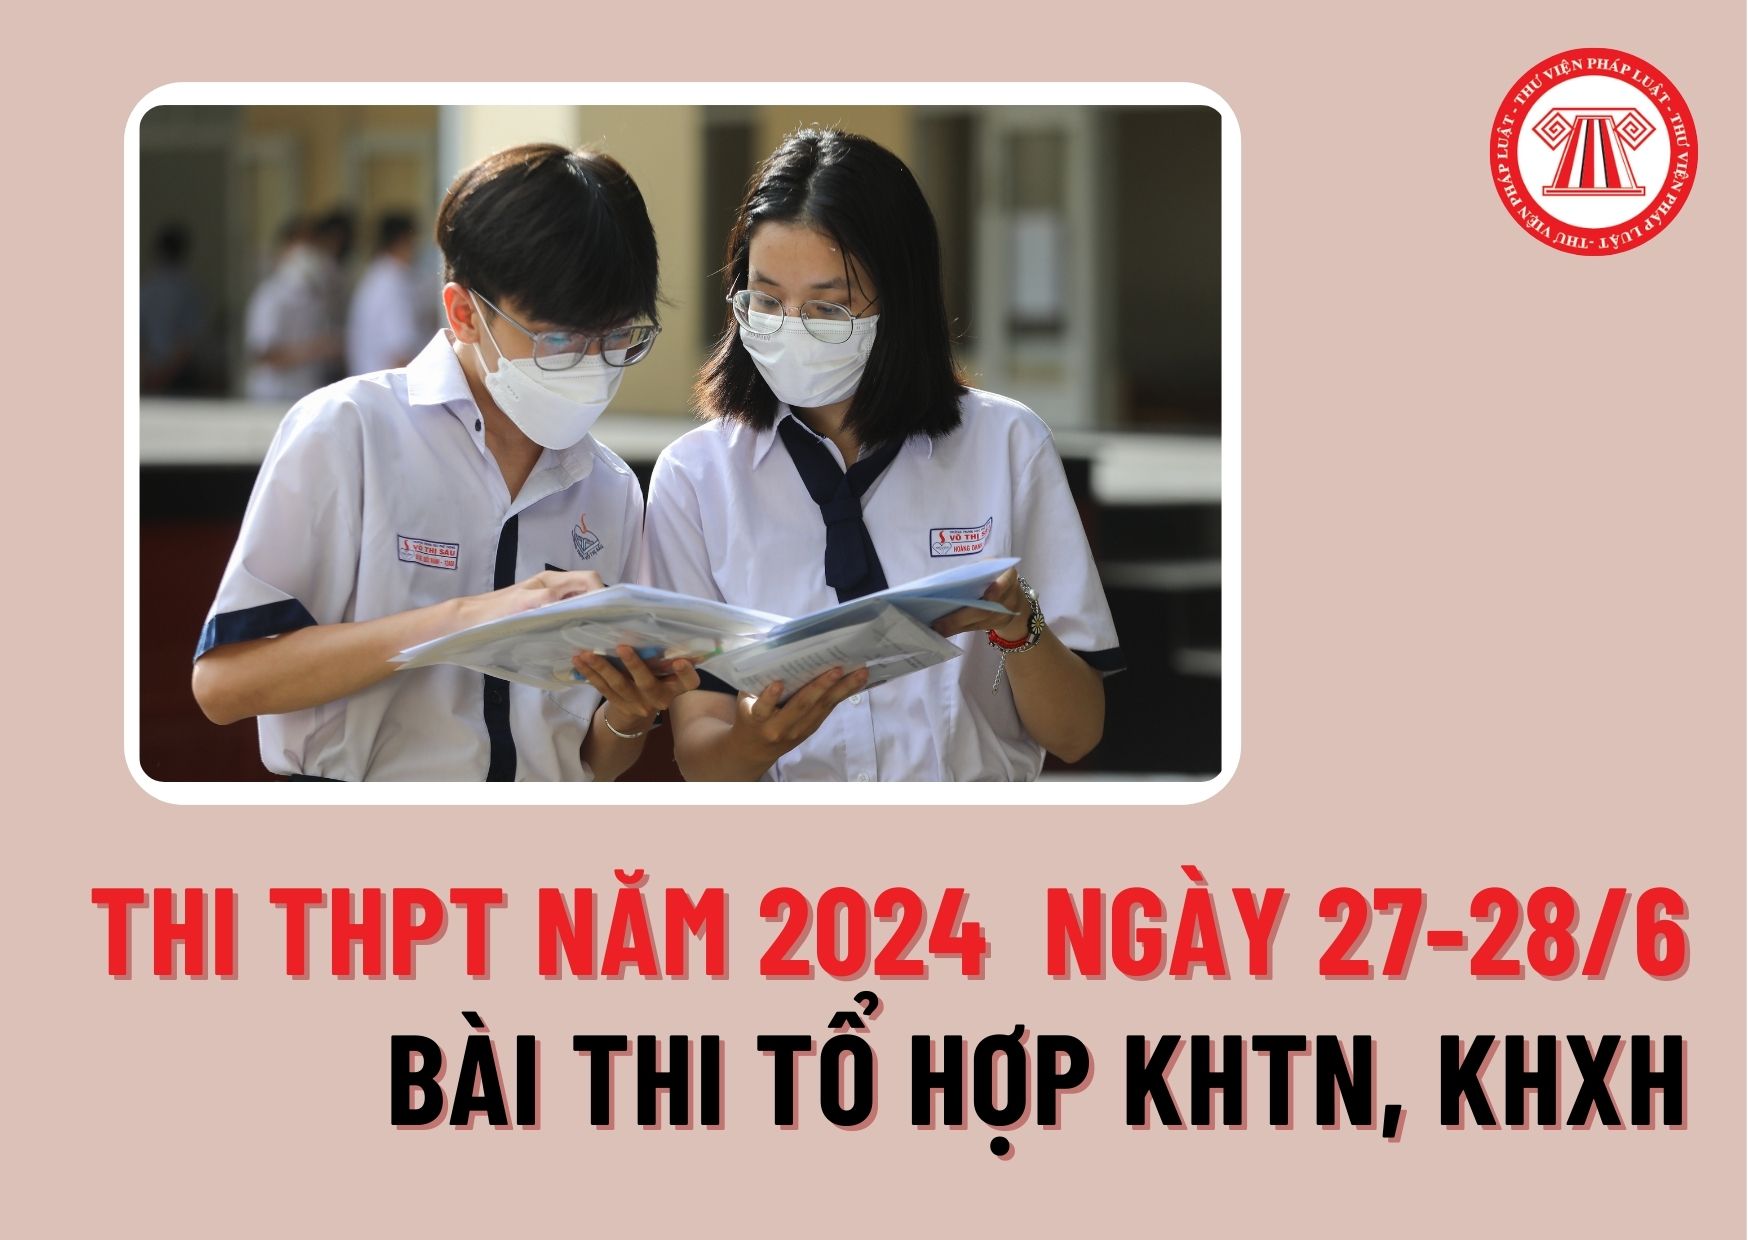 Thí sinh làm bài thi tổ hợp KHTN, KHXH vào ngày nào? Thi tốt nghiệp THPT năm 2024 vào ngày 27-28/6 đúng không?